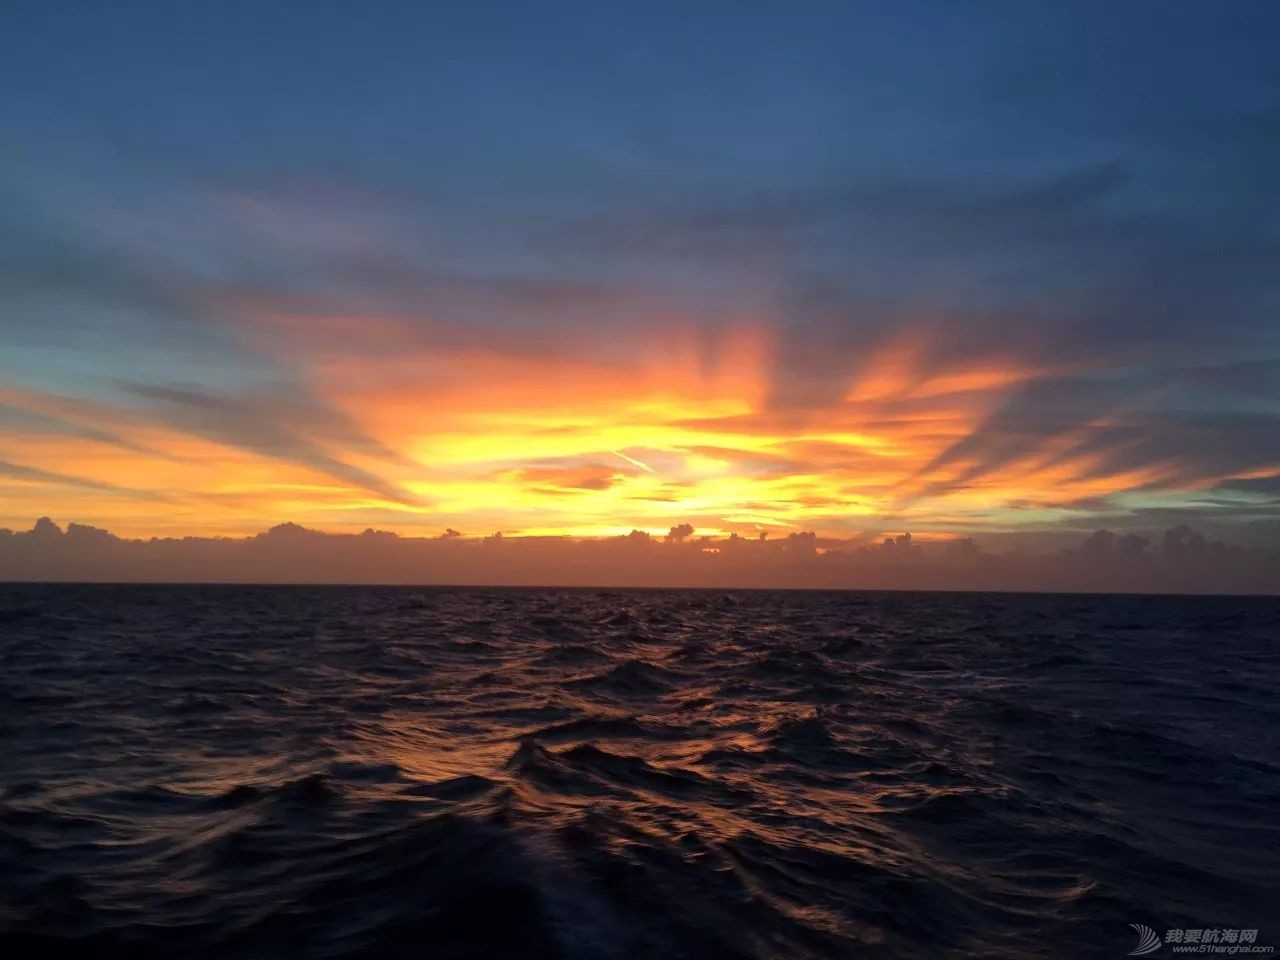 太阳初升时,忽然有十万支金喇叭齐鸣!我在帆船上迎接黎明……w10.jpg